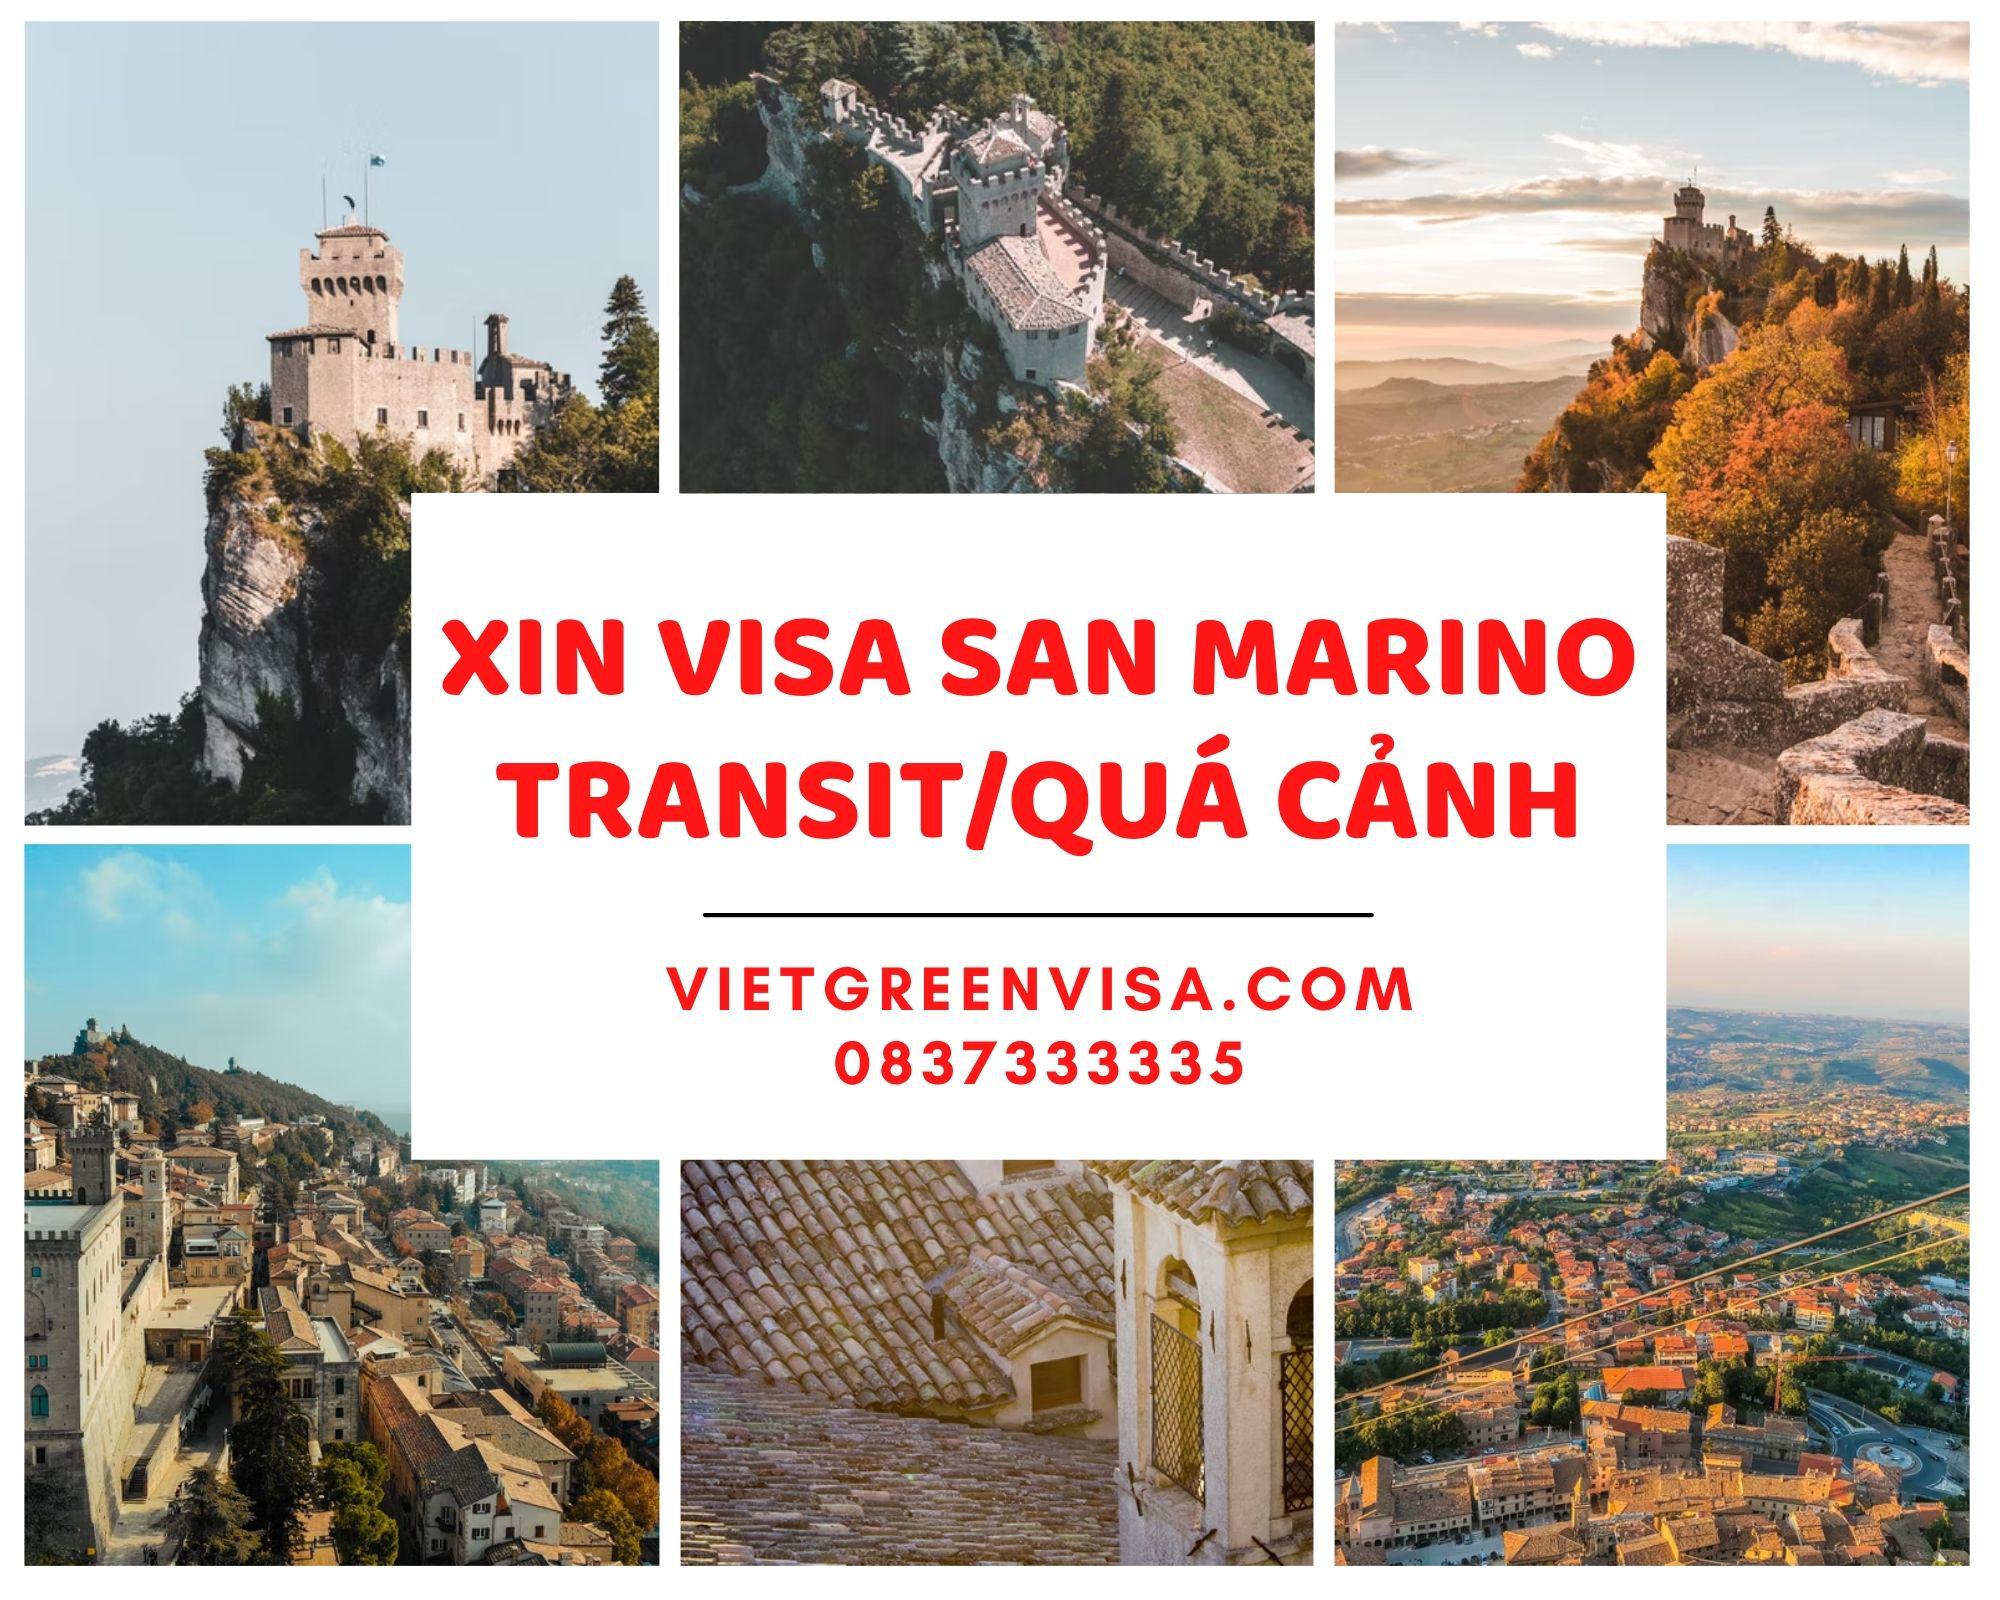 Xin visa quá cảnh qua San Marino, visa San Marino transit uy tín